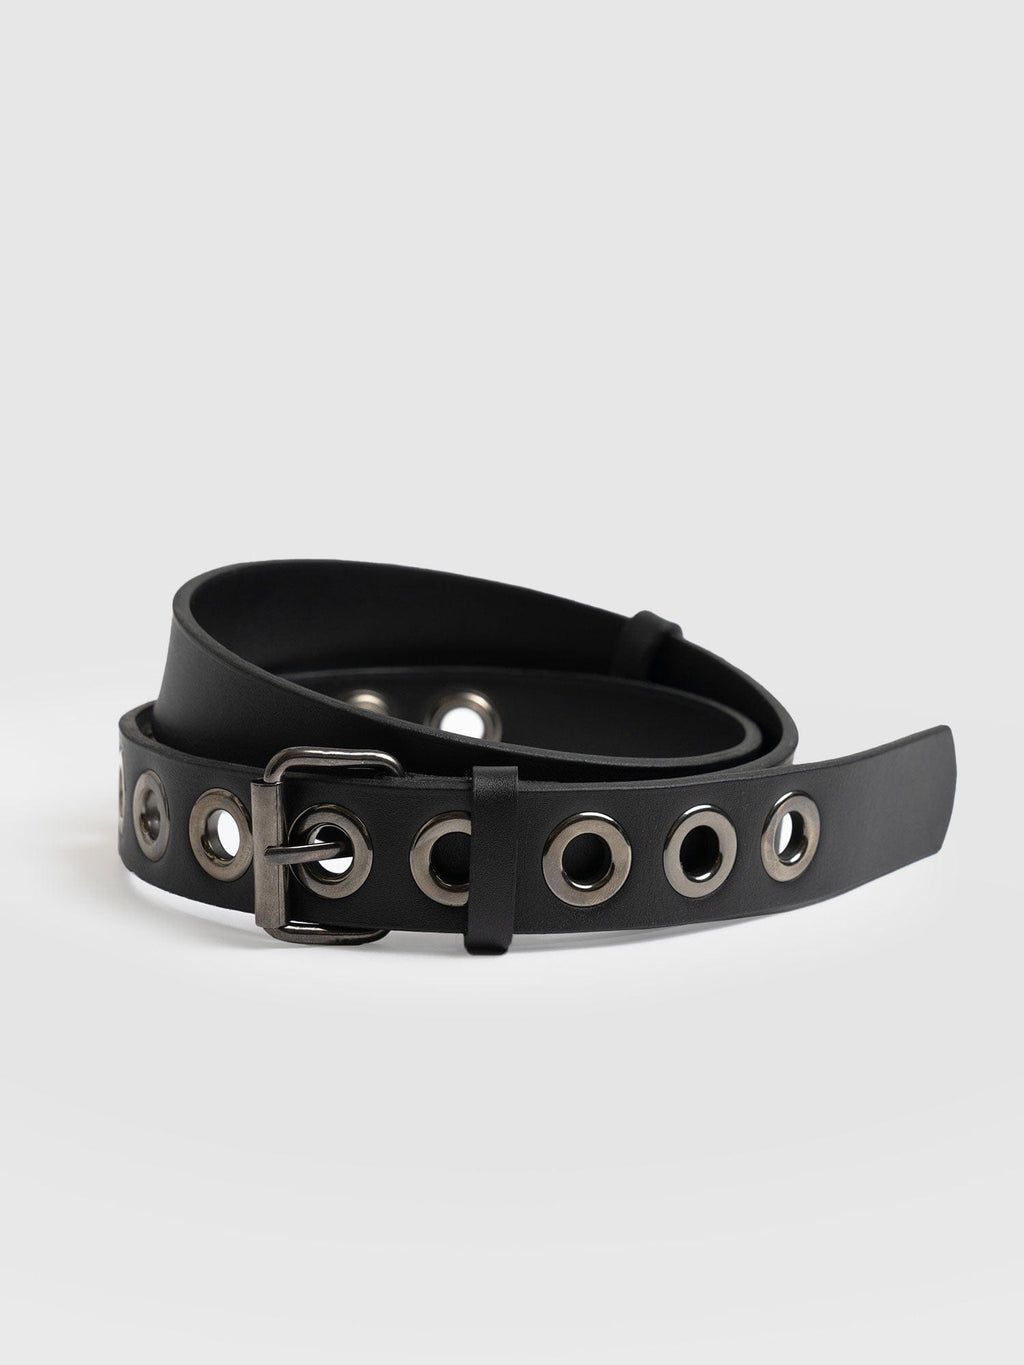 Jagger Eyelet Belt Black - Leather Belts